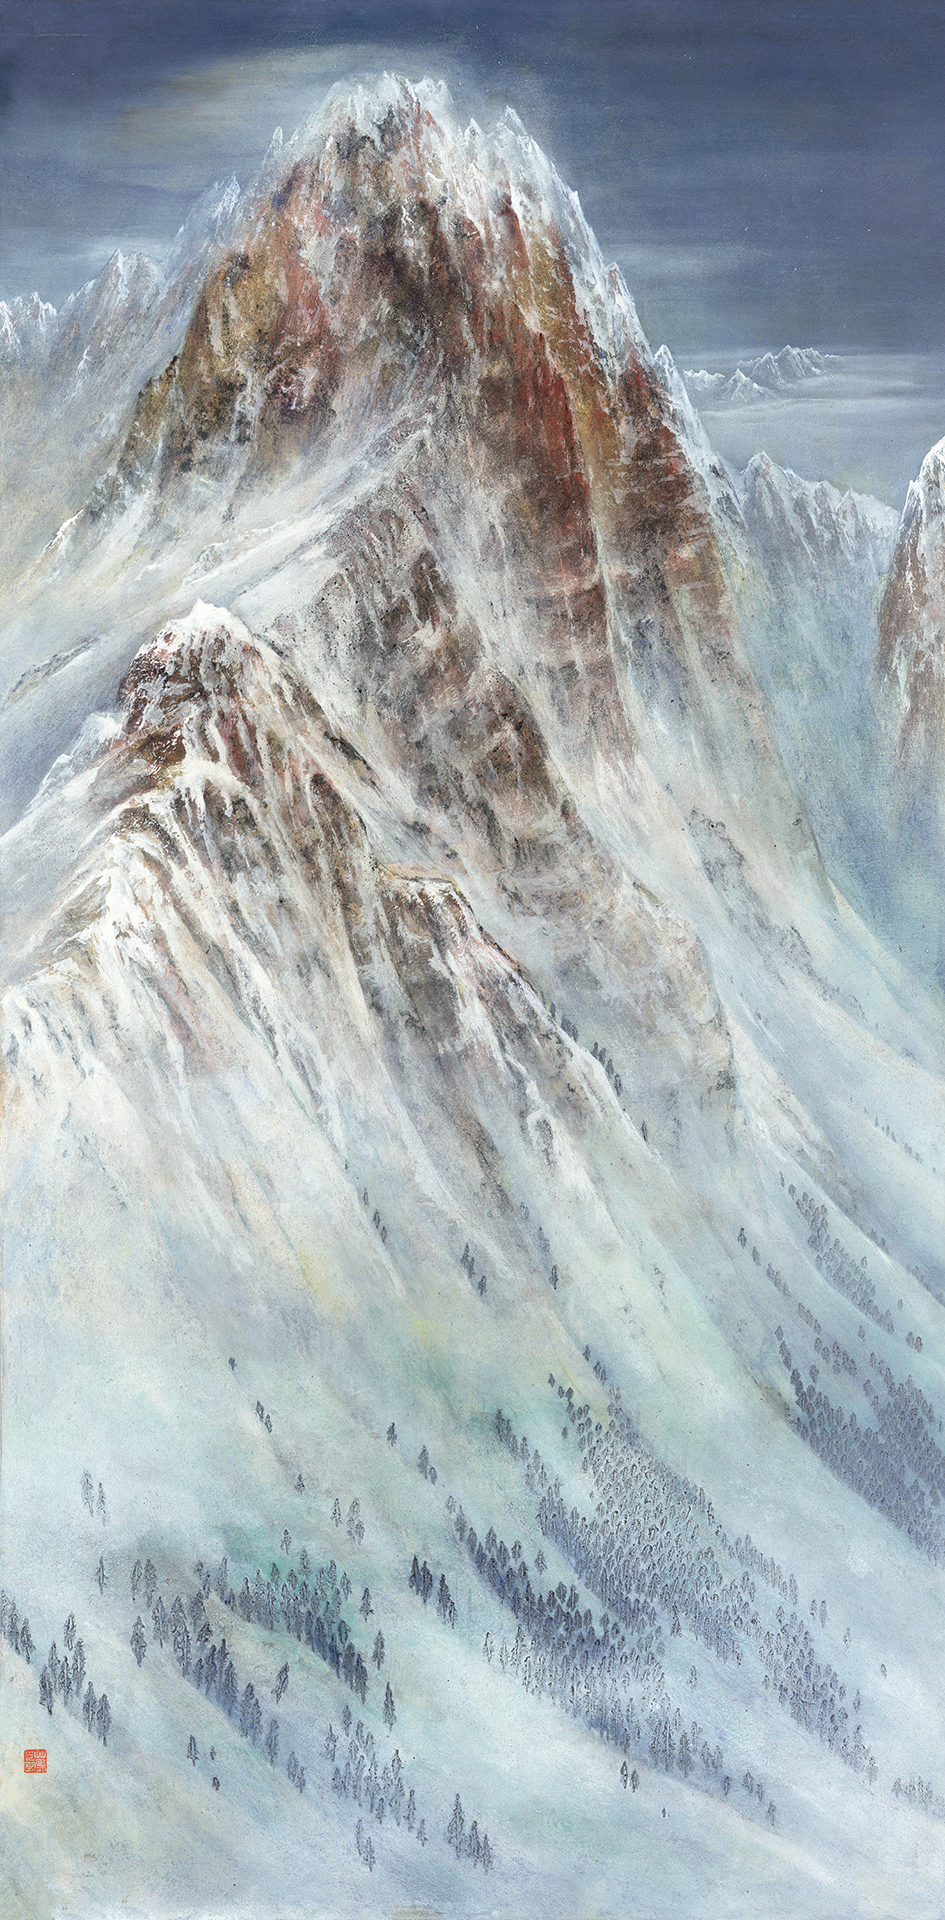 呈现雪域的大美！大国脊梁·圣境峰光-高原雪山画派作品展亮相关馆